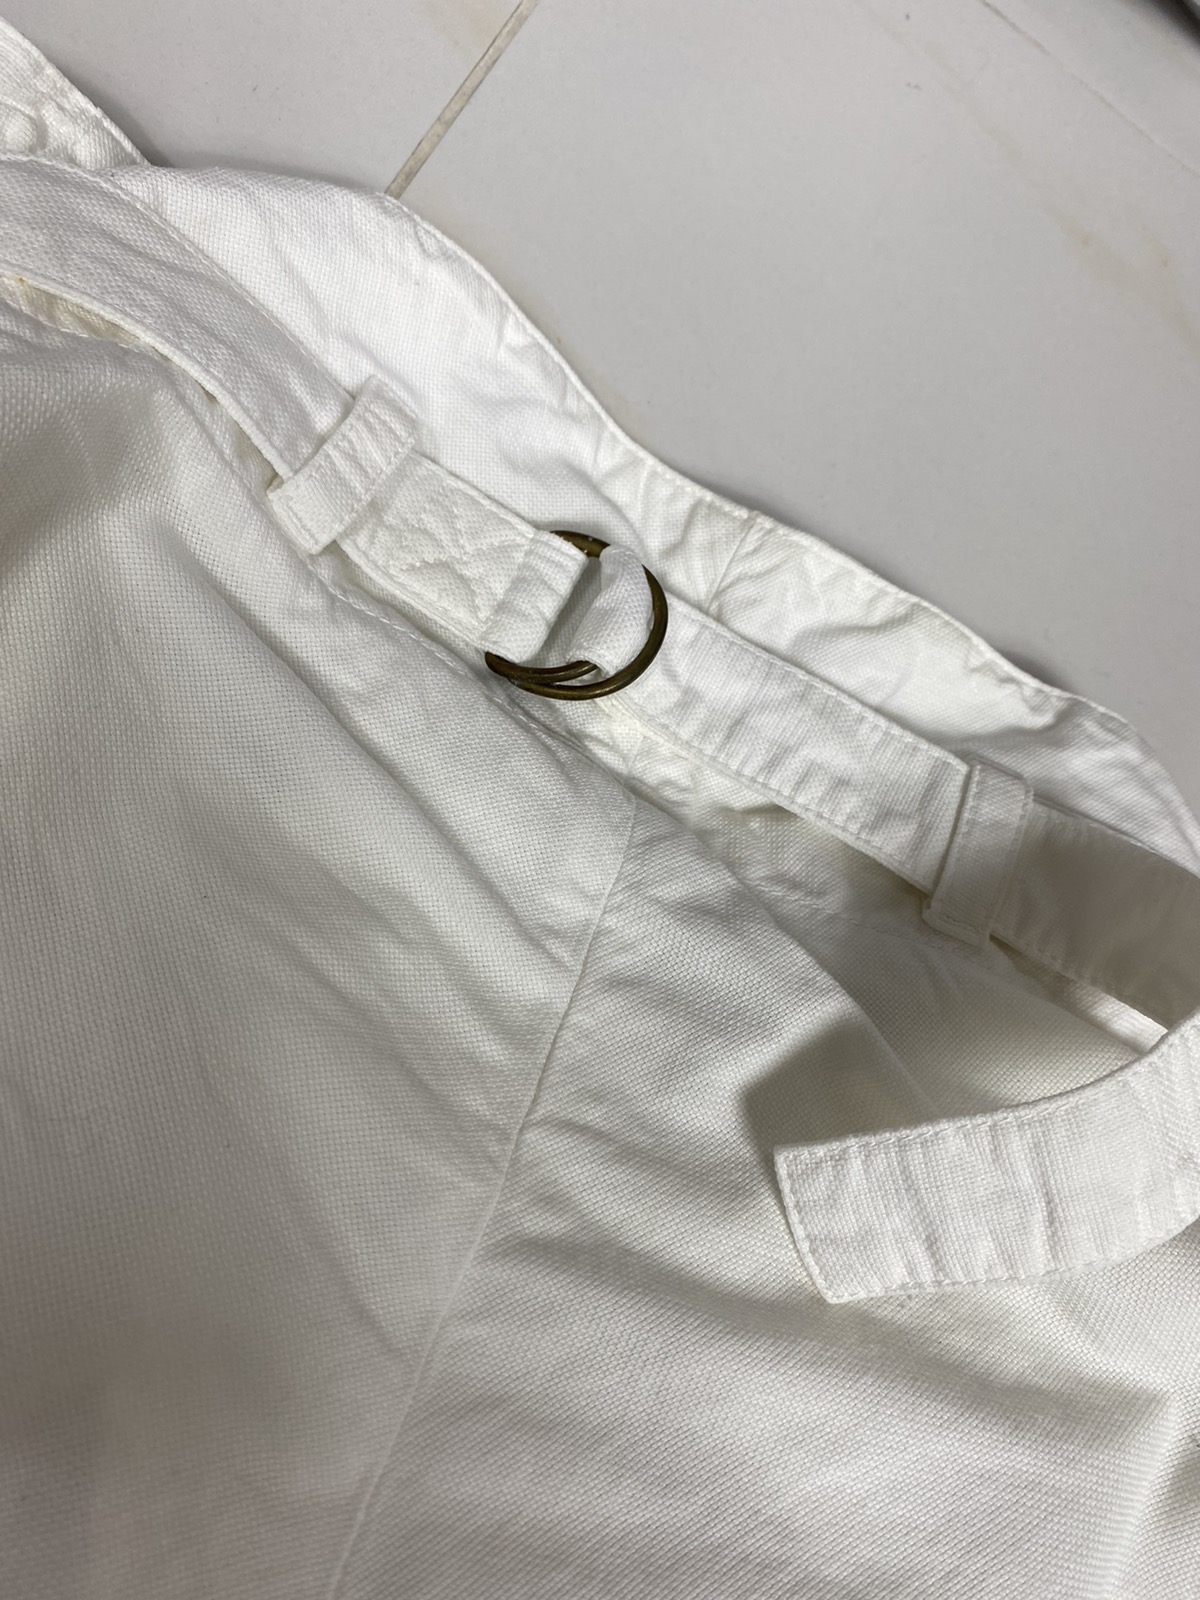 Vivienne Westwood Man Parachute Trousers Pants. S0119 - 14